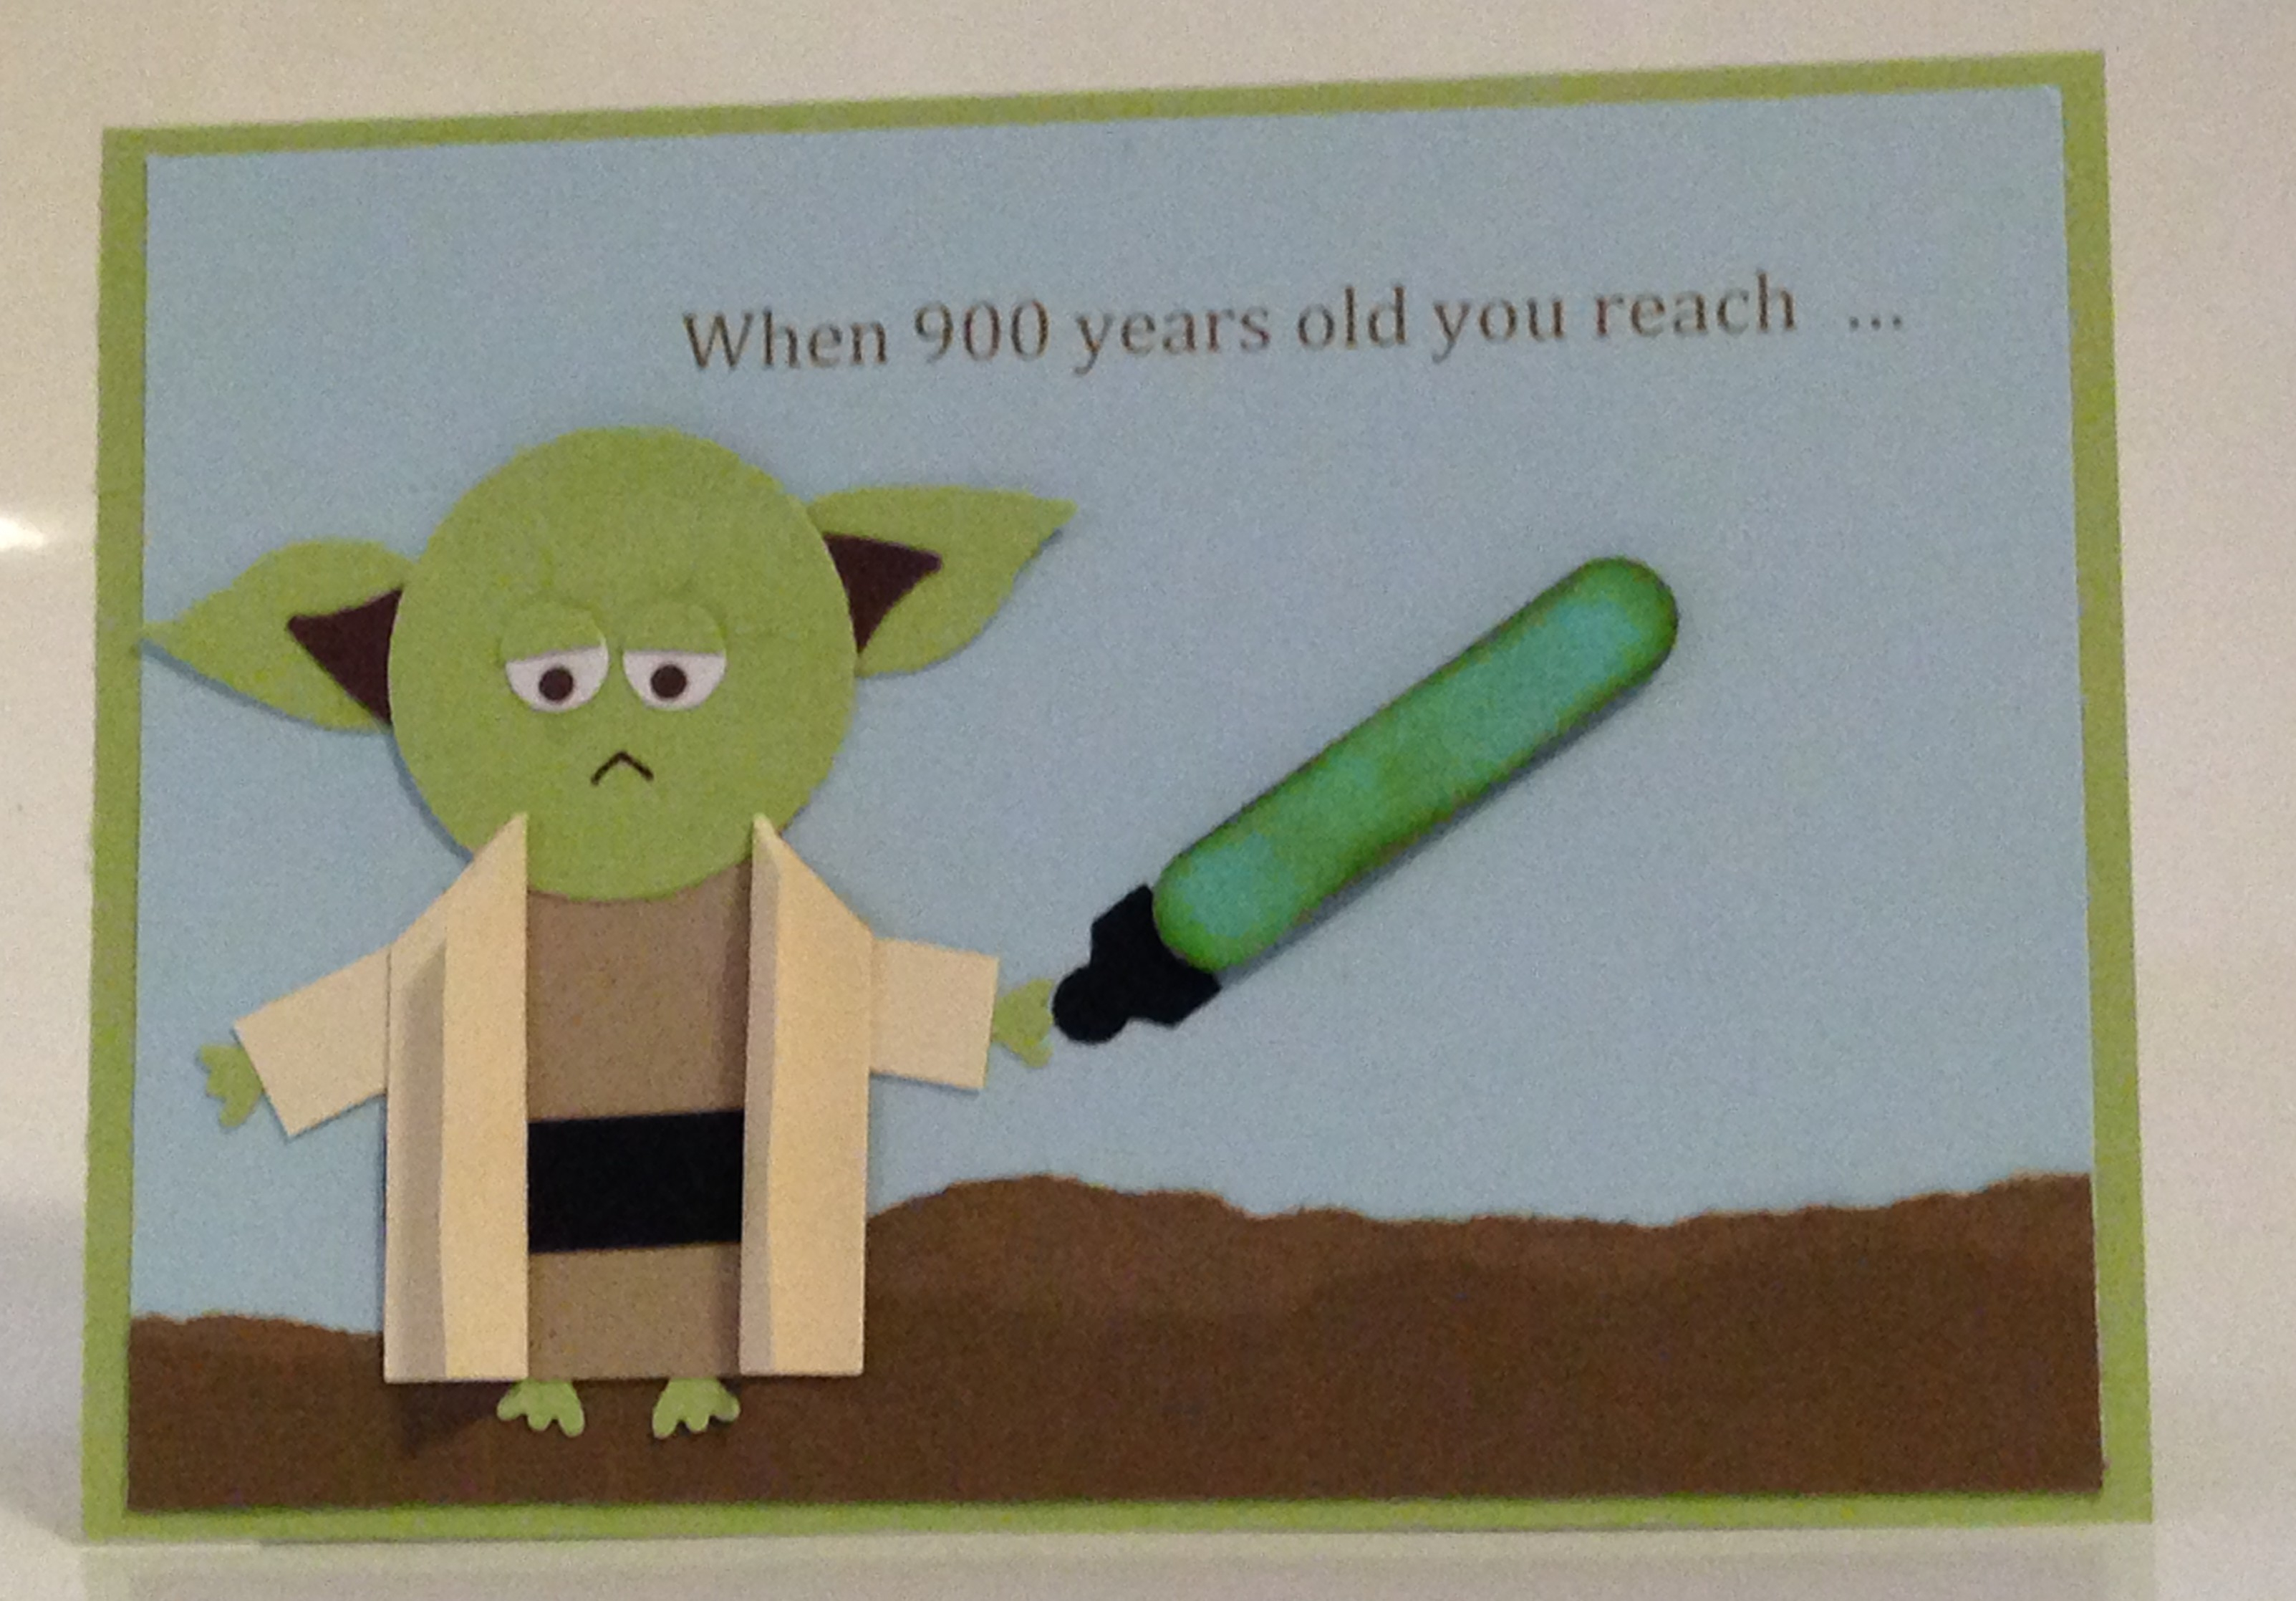 Star Wars Birthday Card Ideas Star Wars Punch Art Yoda Birthday Card Caros Pretty Things